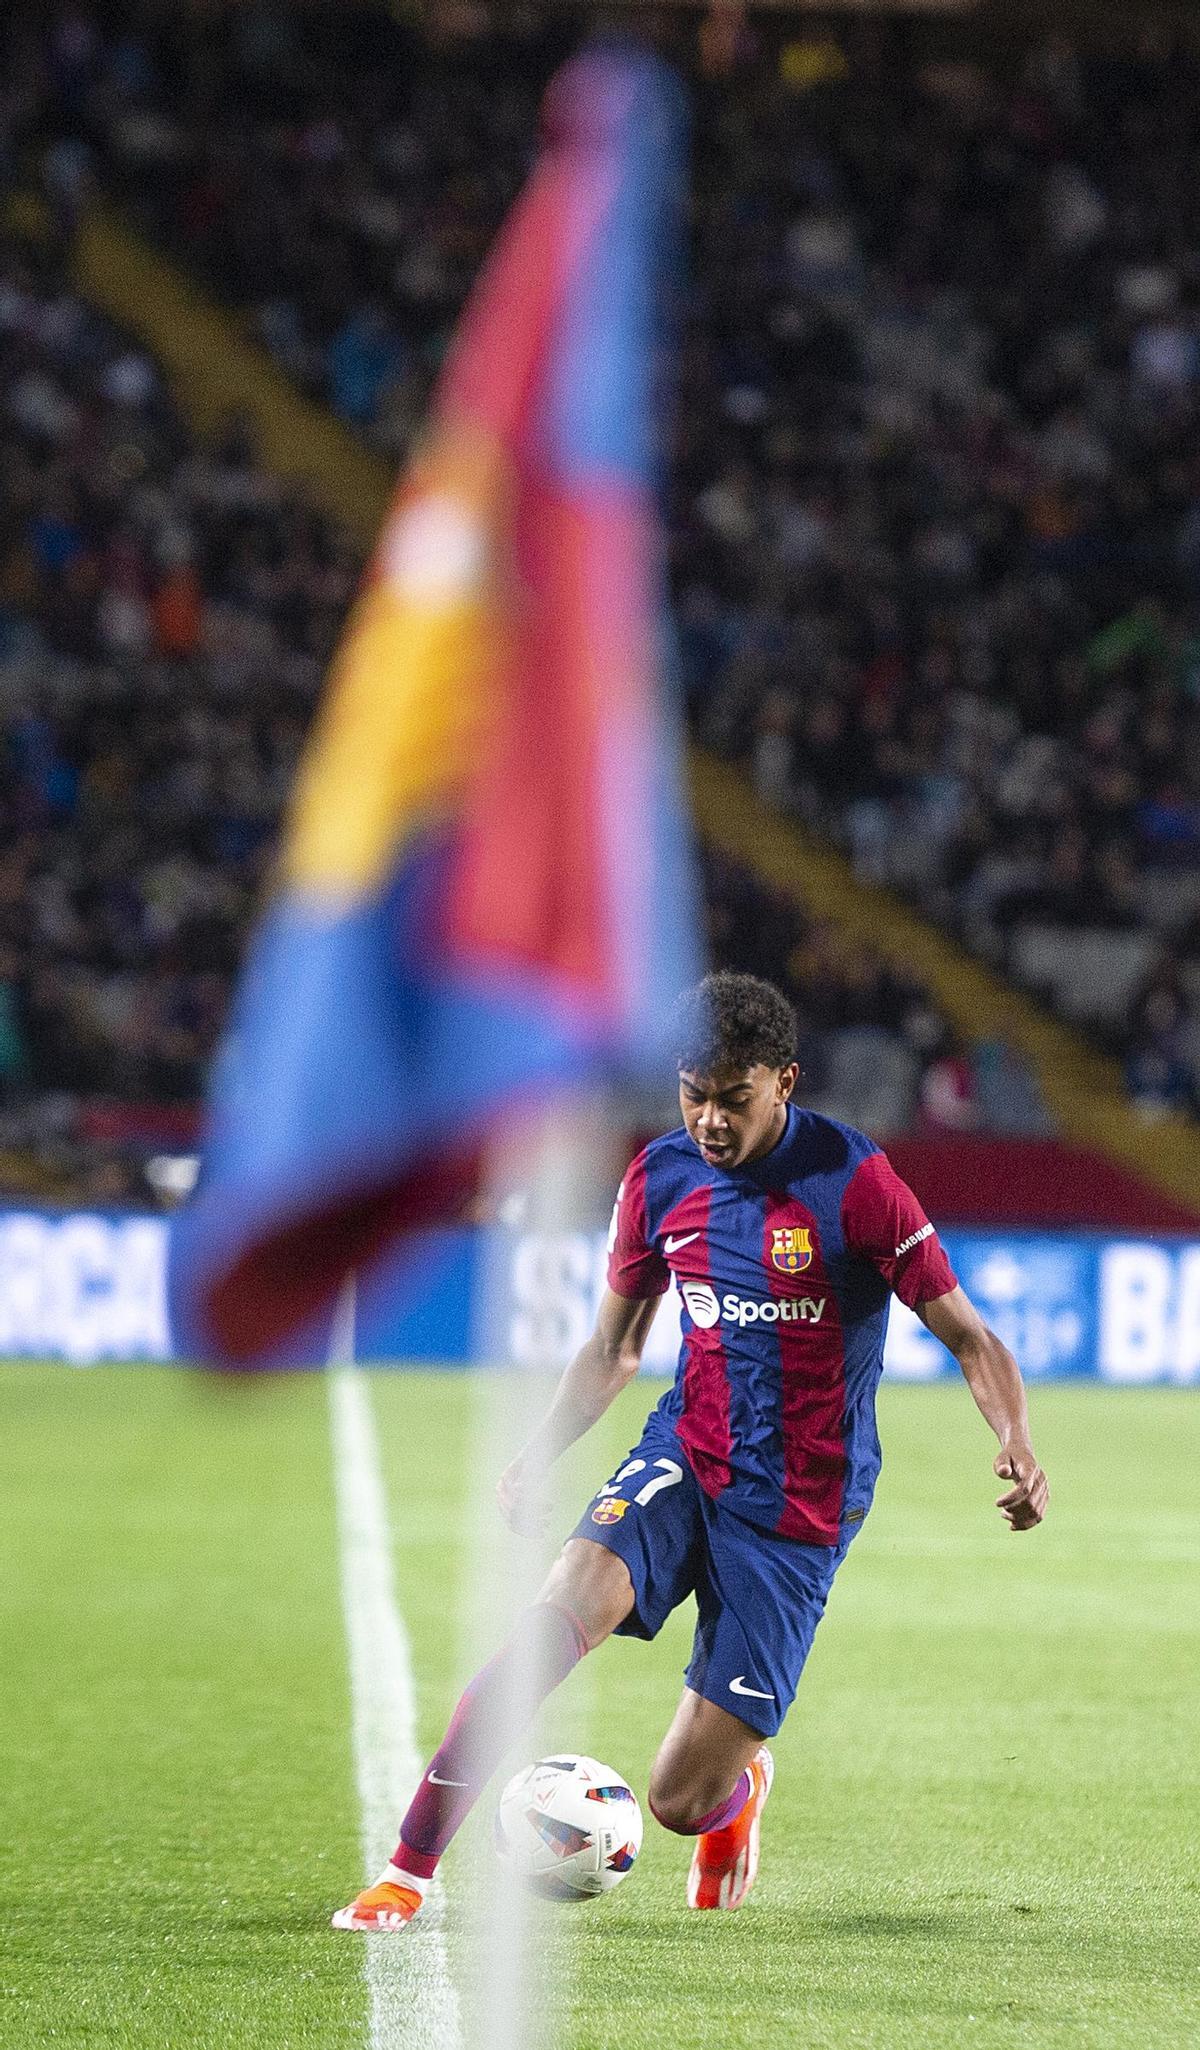 Lamine evita que el balón salga por la línea de banda durante el partido de liga entre el FC Barcelona y la UD Las Palmas.